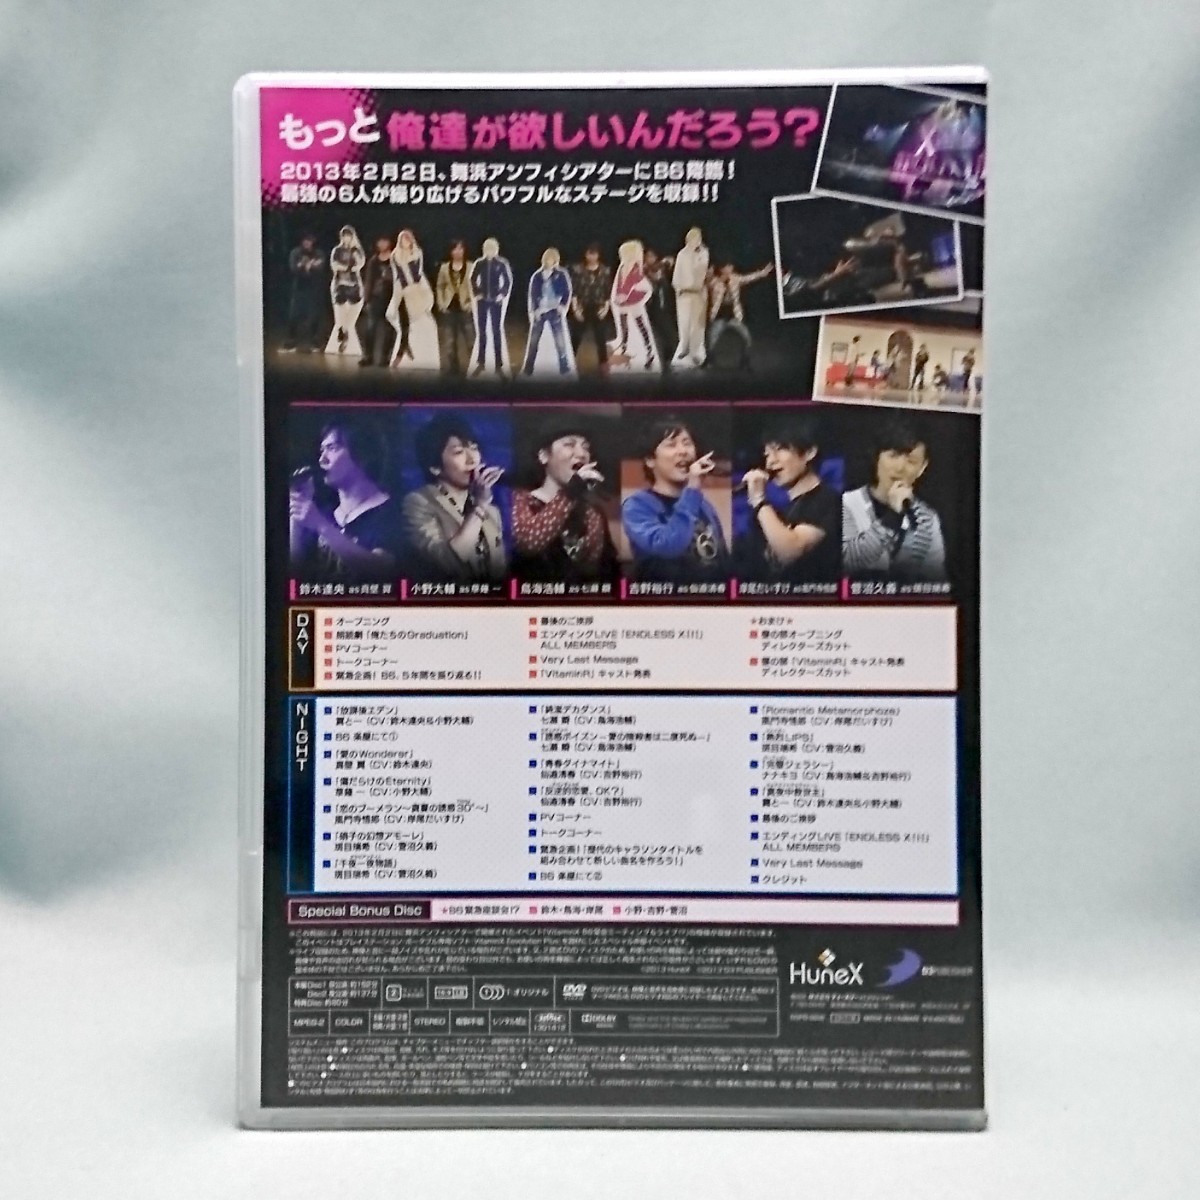 DVD / VitaminX B6緊急ミーティング & ライブ!? 限定版 MTG